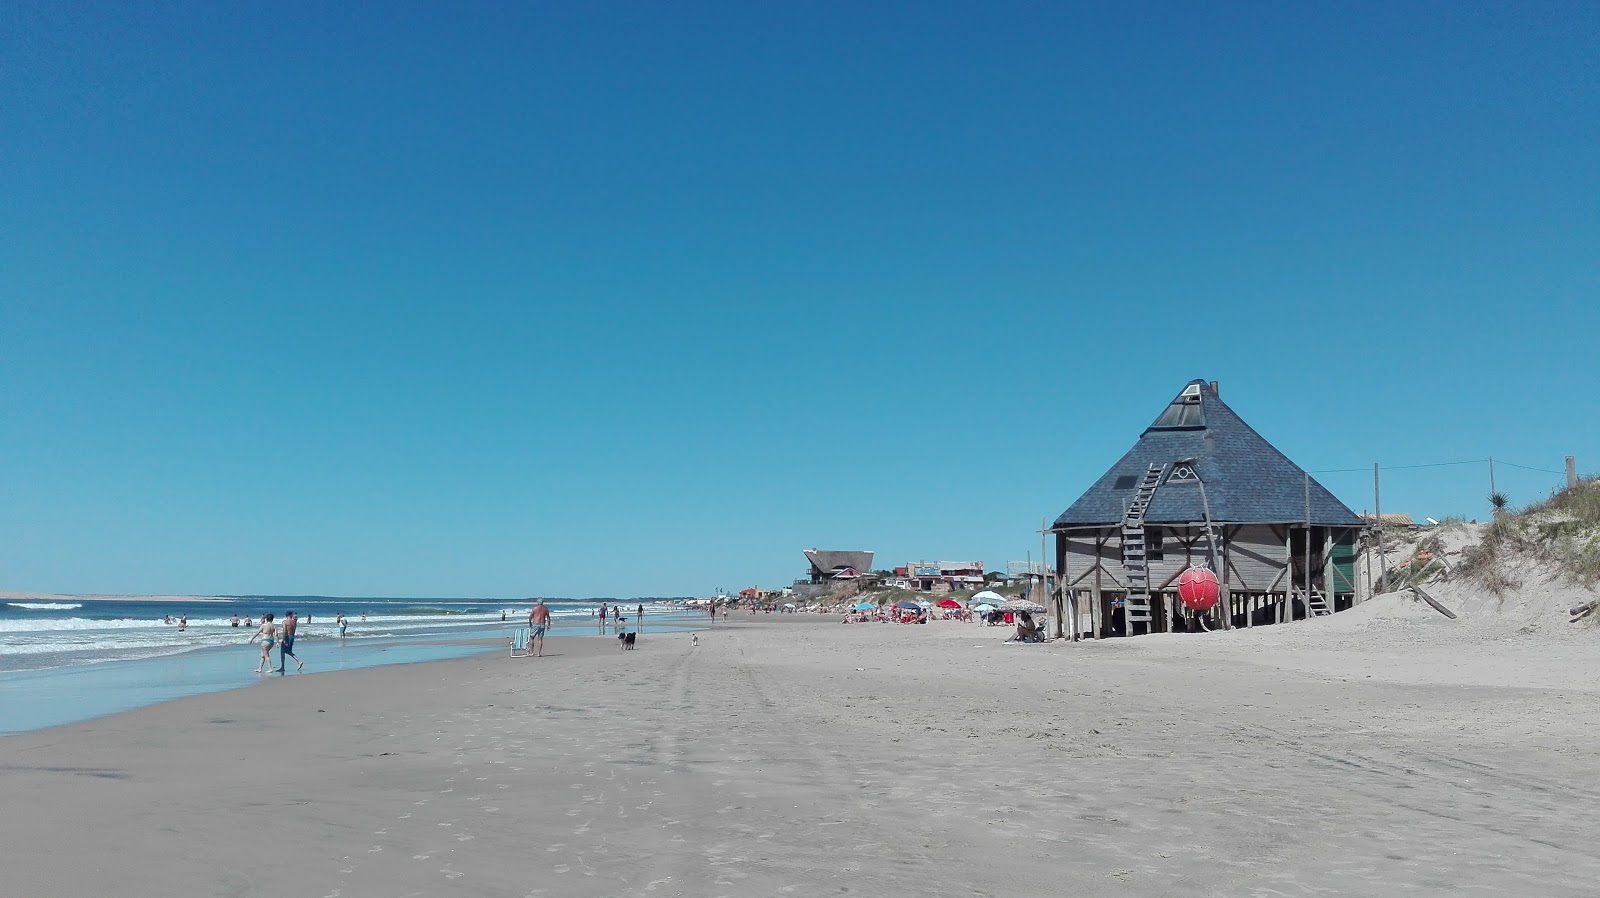 Fotografie cu Aguas Dulces Beach - locul popular printre cunoscătorii de relaxare